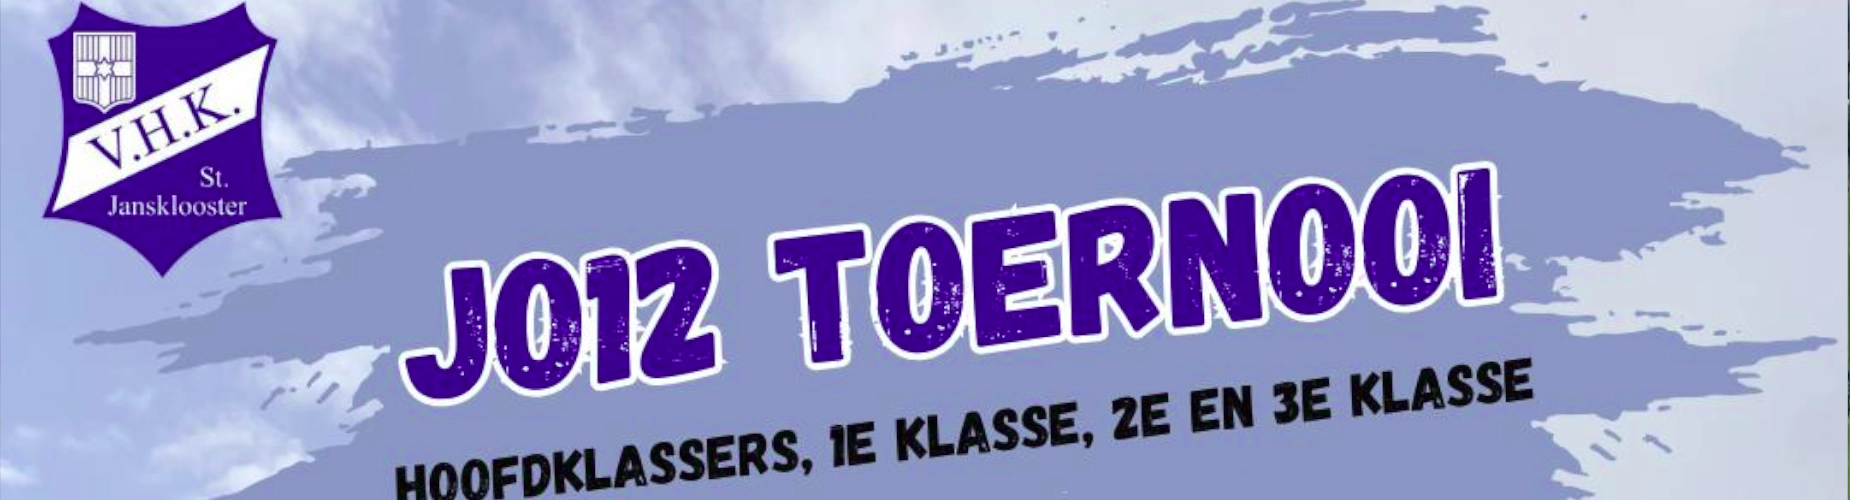 Banner - O12 - JO12 Toernooi - VHK - Sint Jansklooster